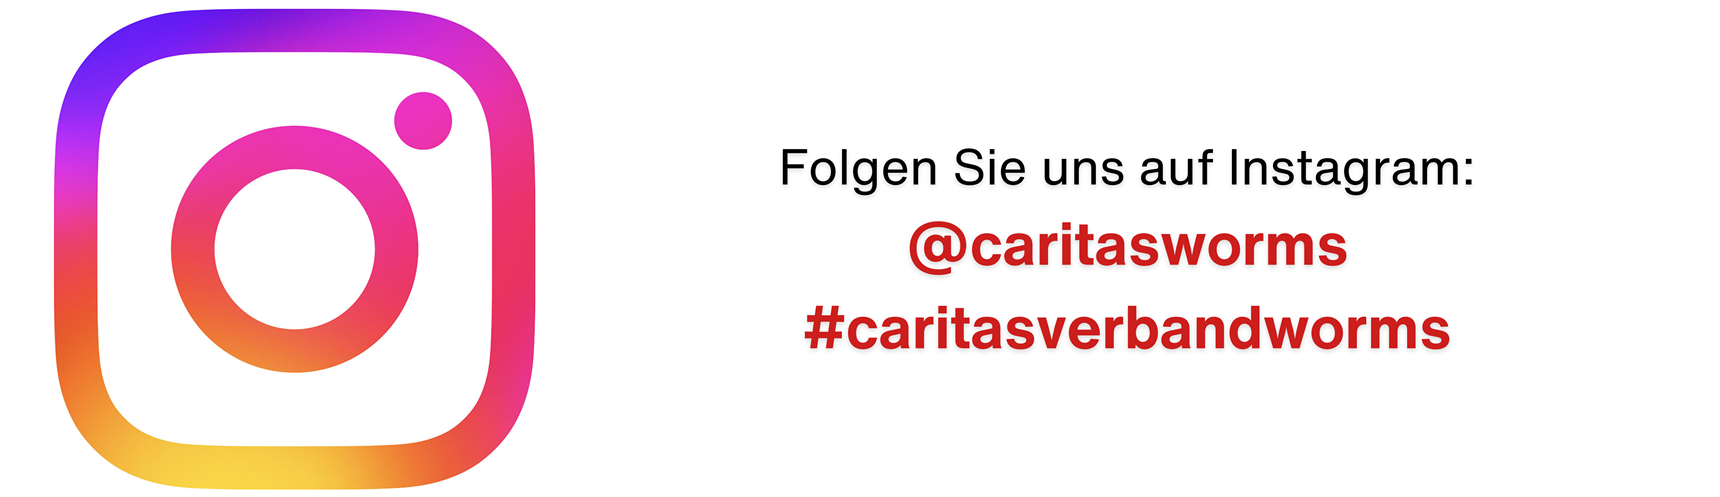 Banner mit Verweis auf @caritasworms und #caritasverbandworms auf Instagram